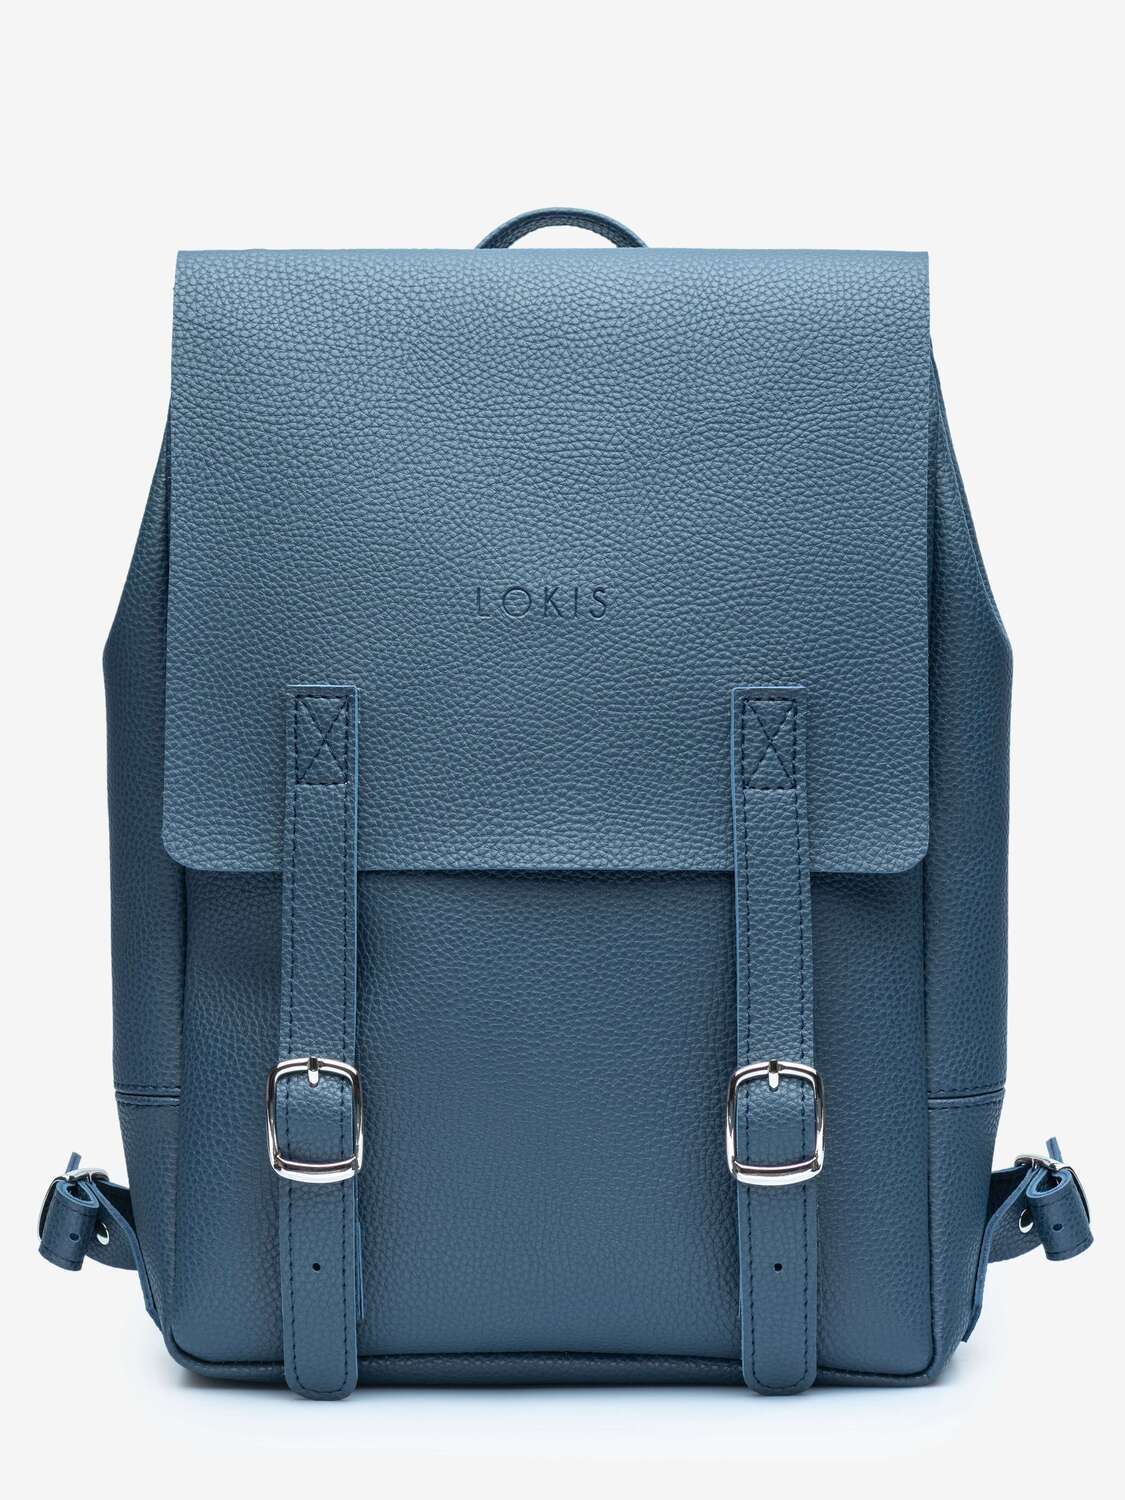 Прямоугольный рюкзак синего цвета